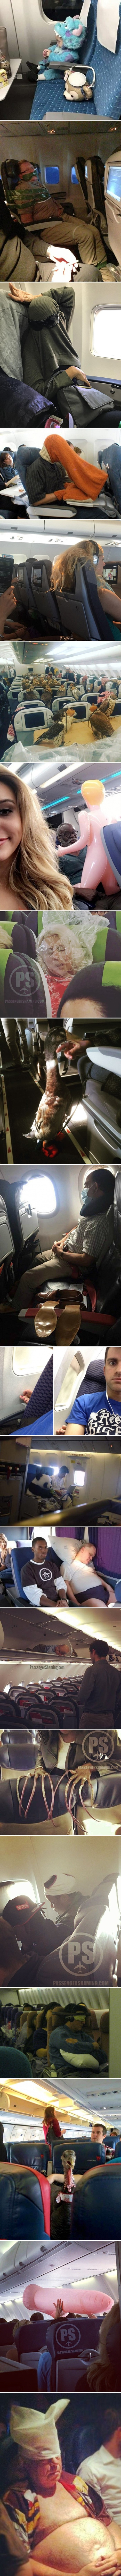 20 najsmješnijih slika koje dokazuju da se u putničkim zrakoplovima događaju vrlo čudne stvari